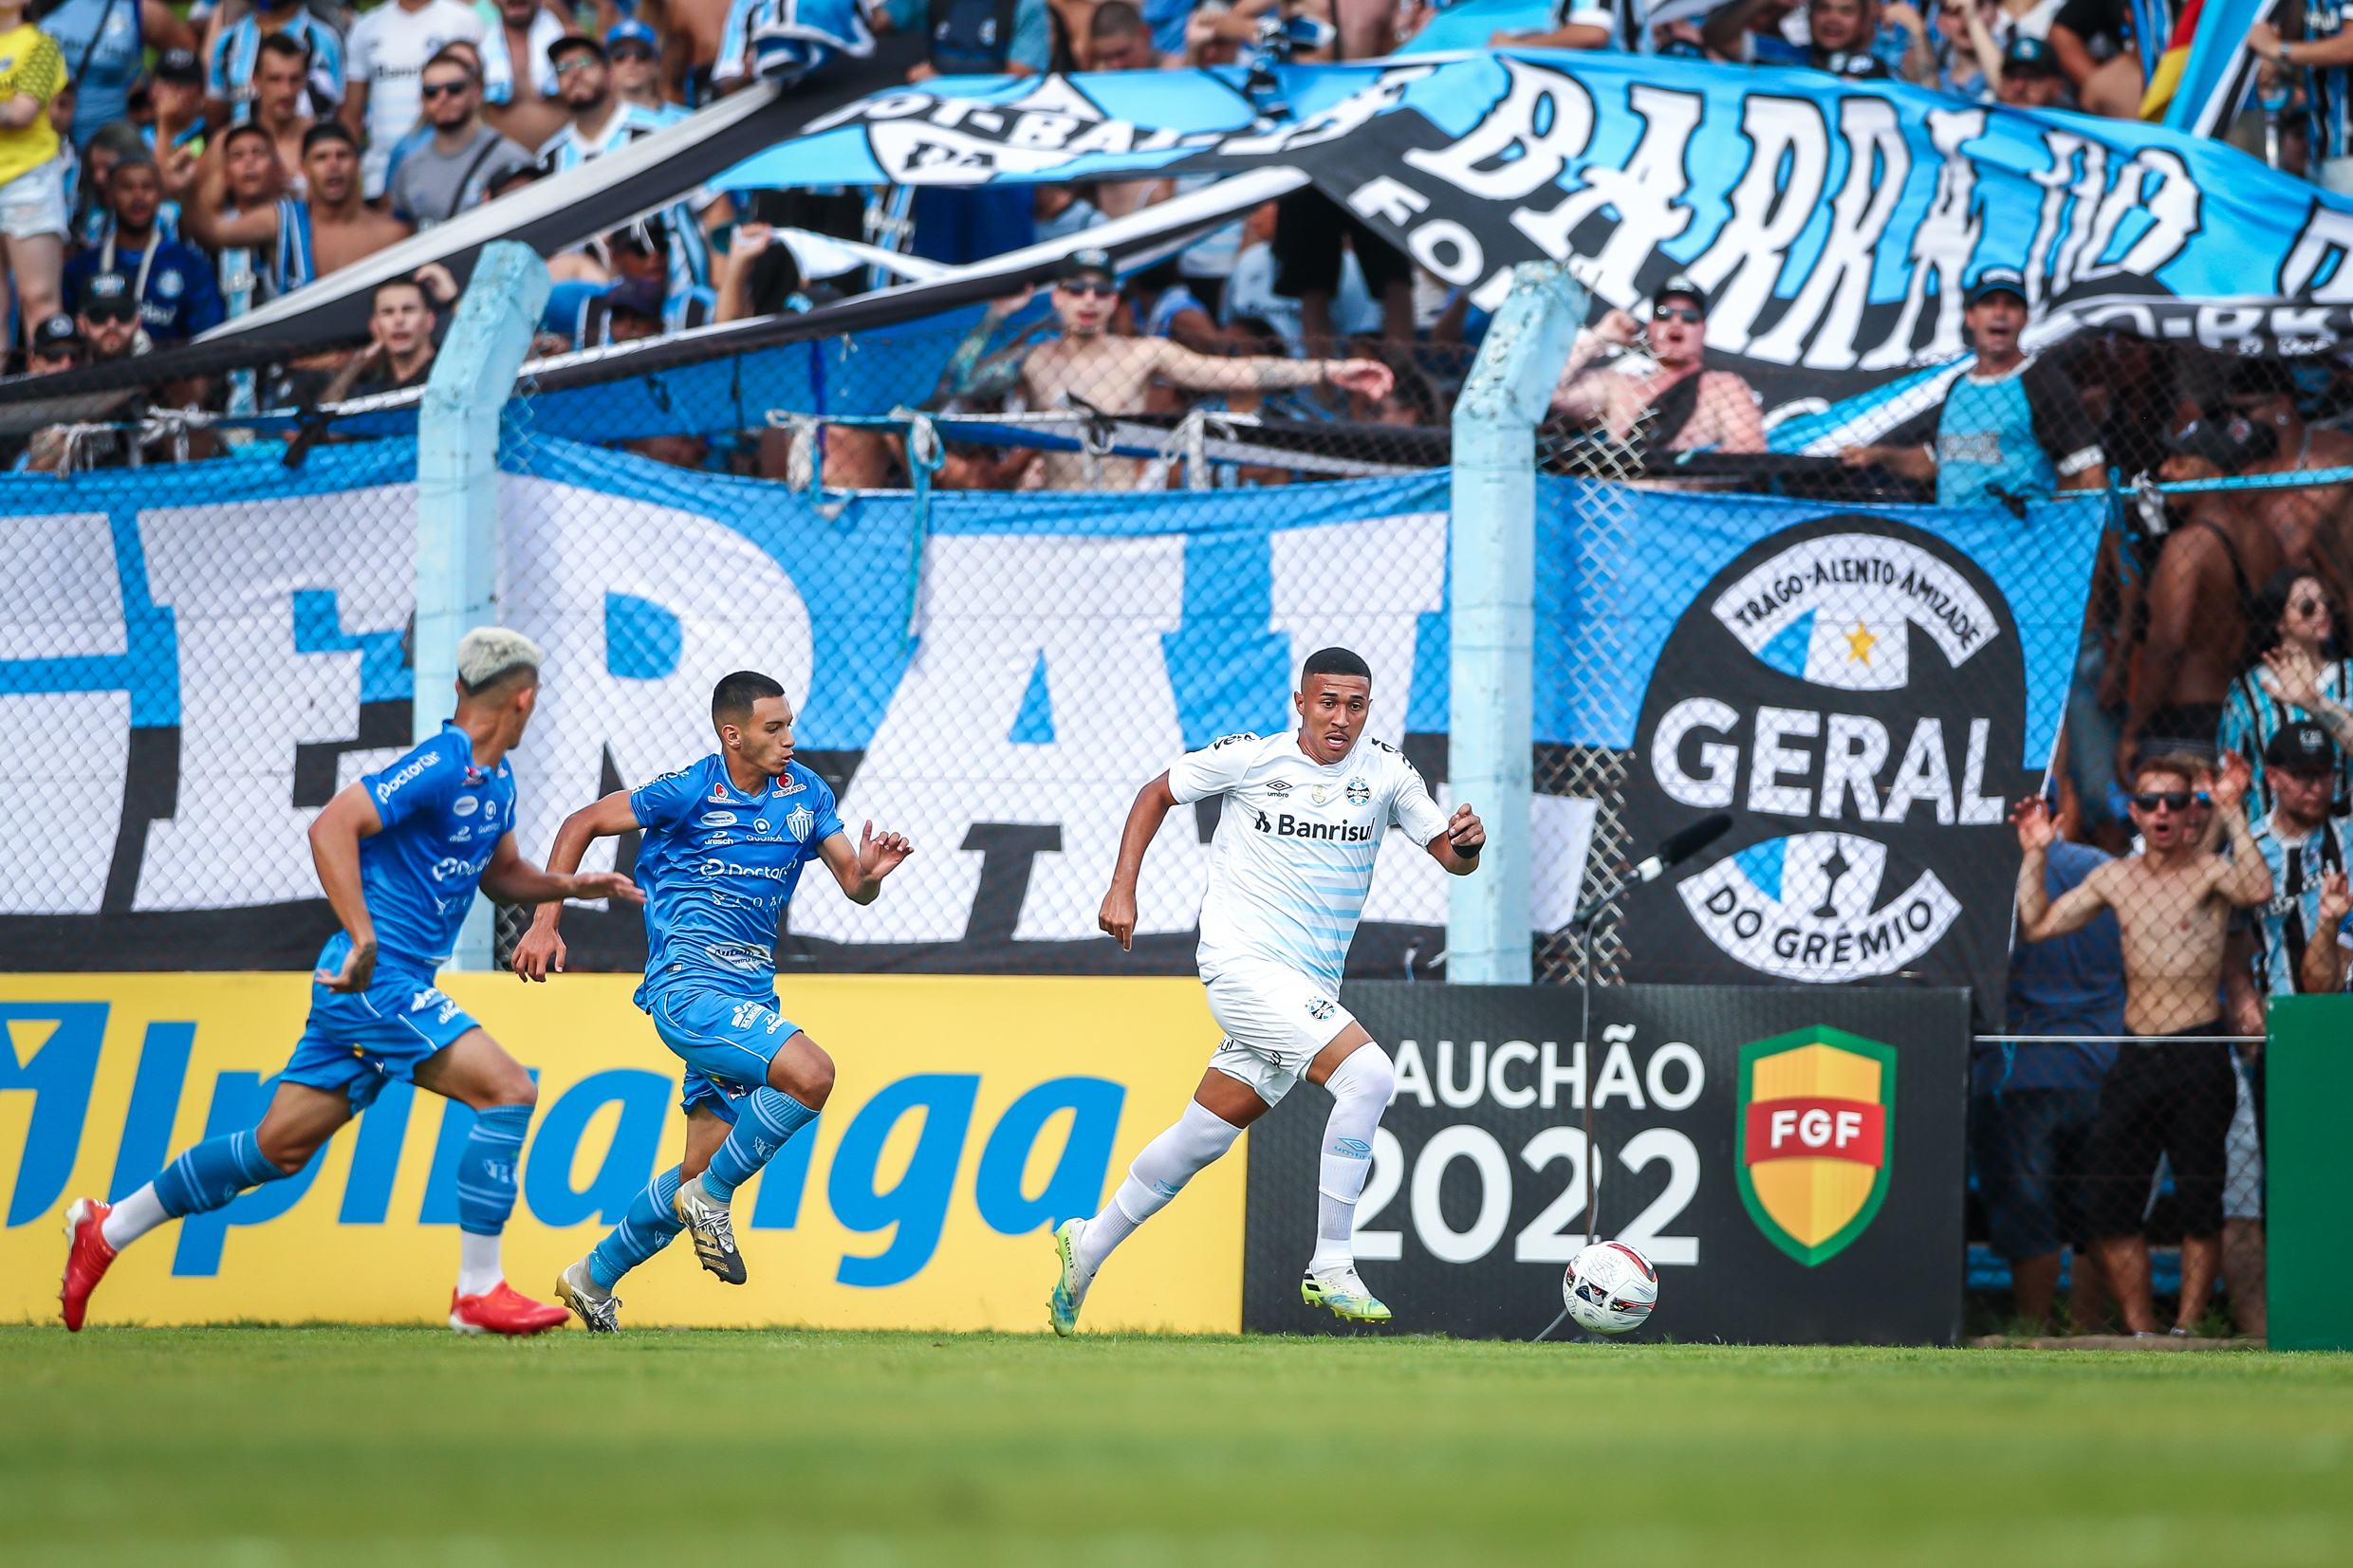 Fortaleza vs America MG: A Clash of Titans in Brazilian Football